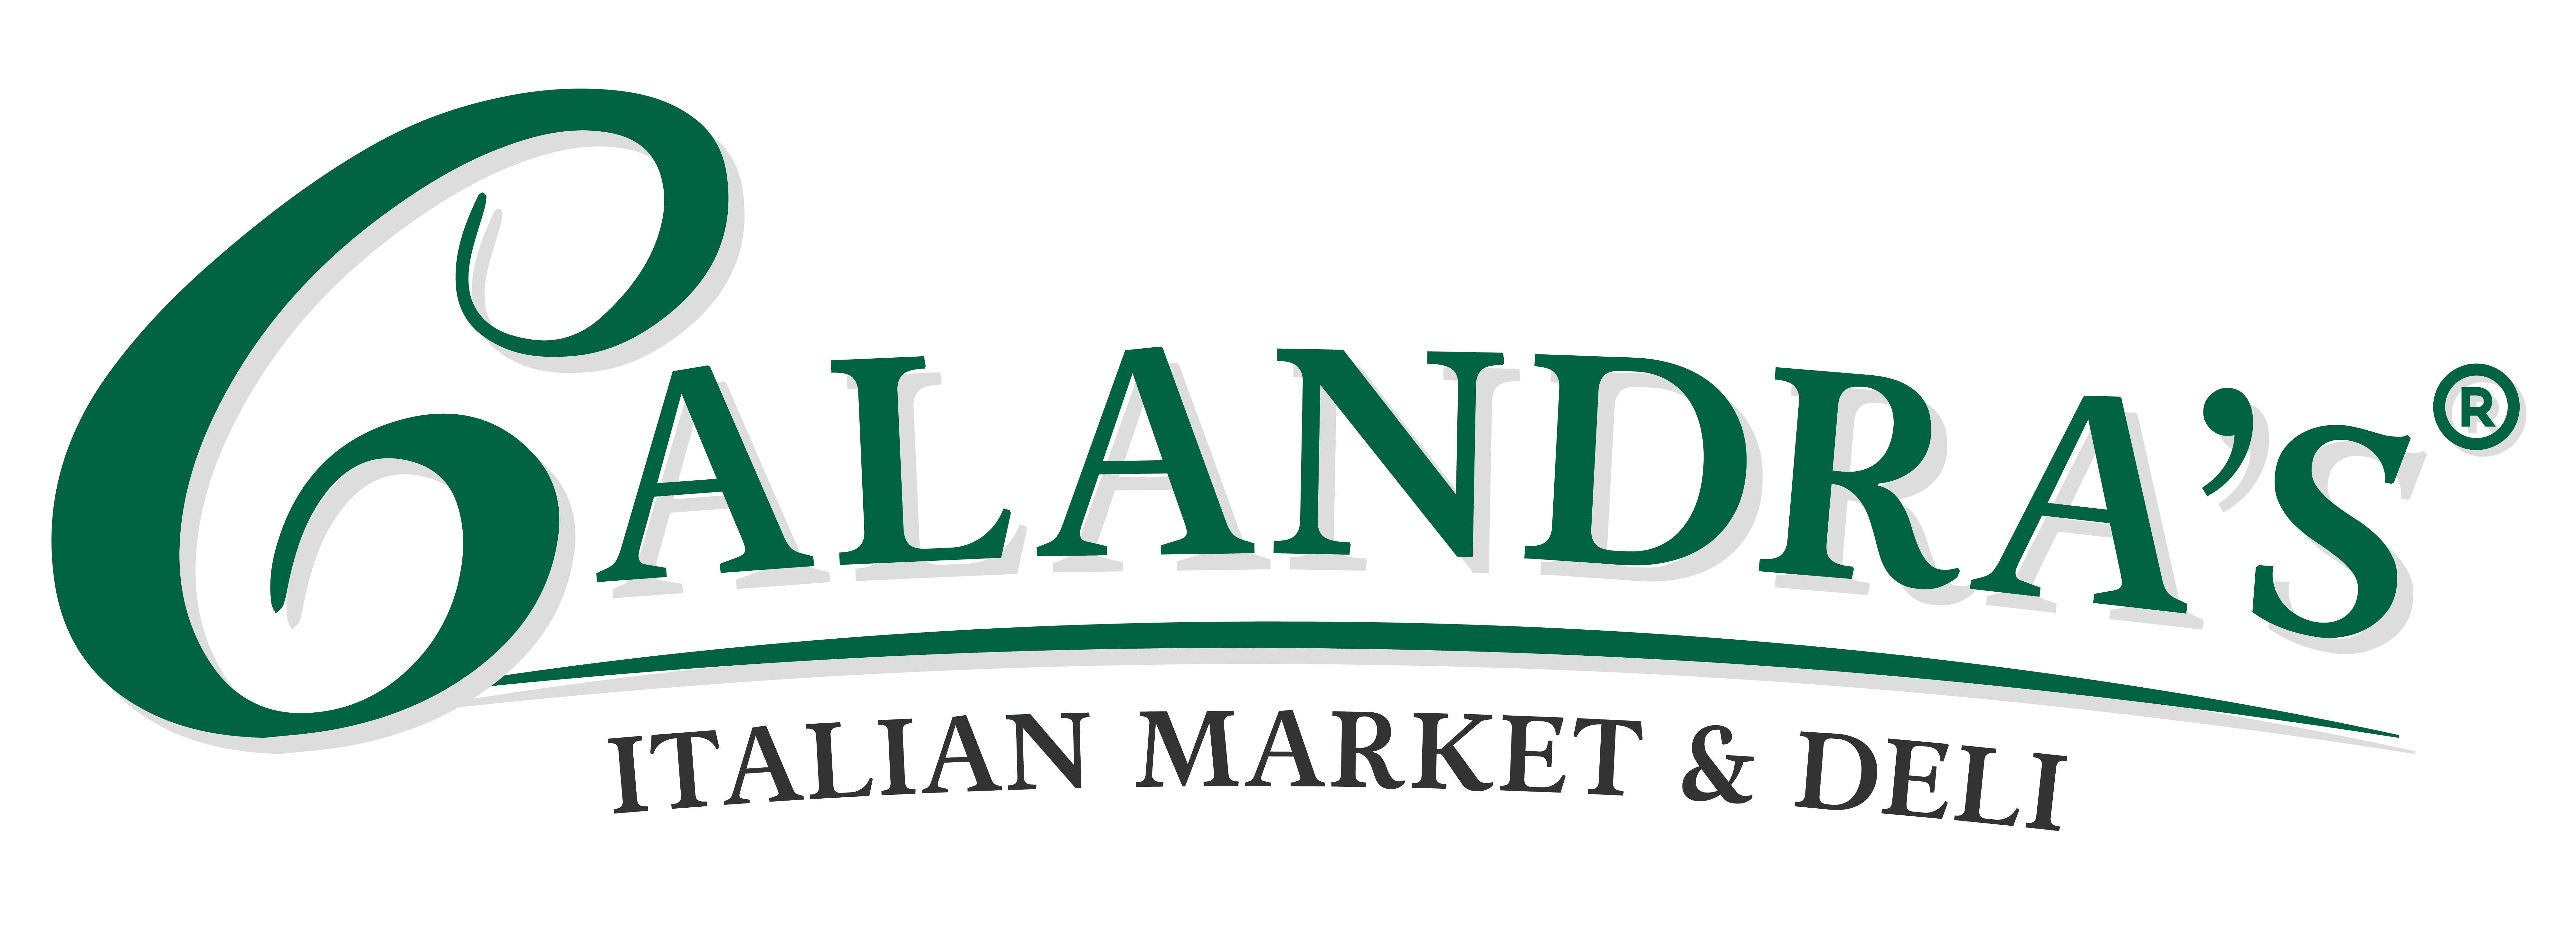 Calandra's Italian Market & Deli Logo copy